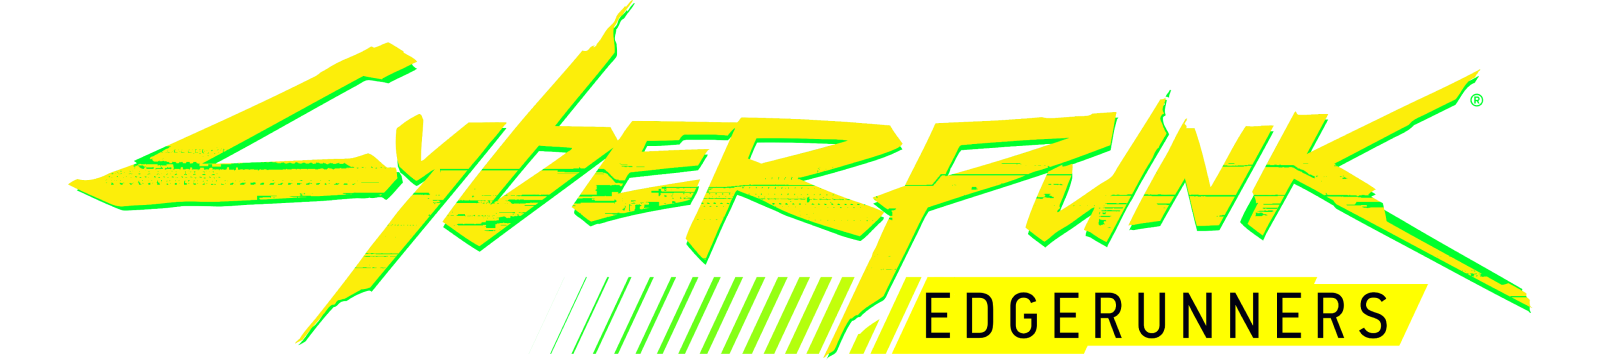 Cyberpunk Edgerunners Logo.png